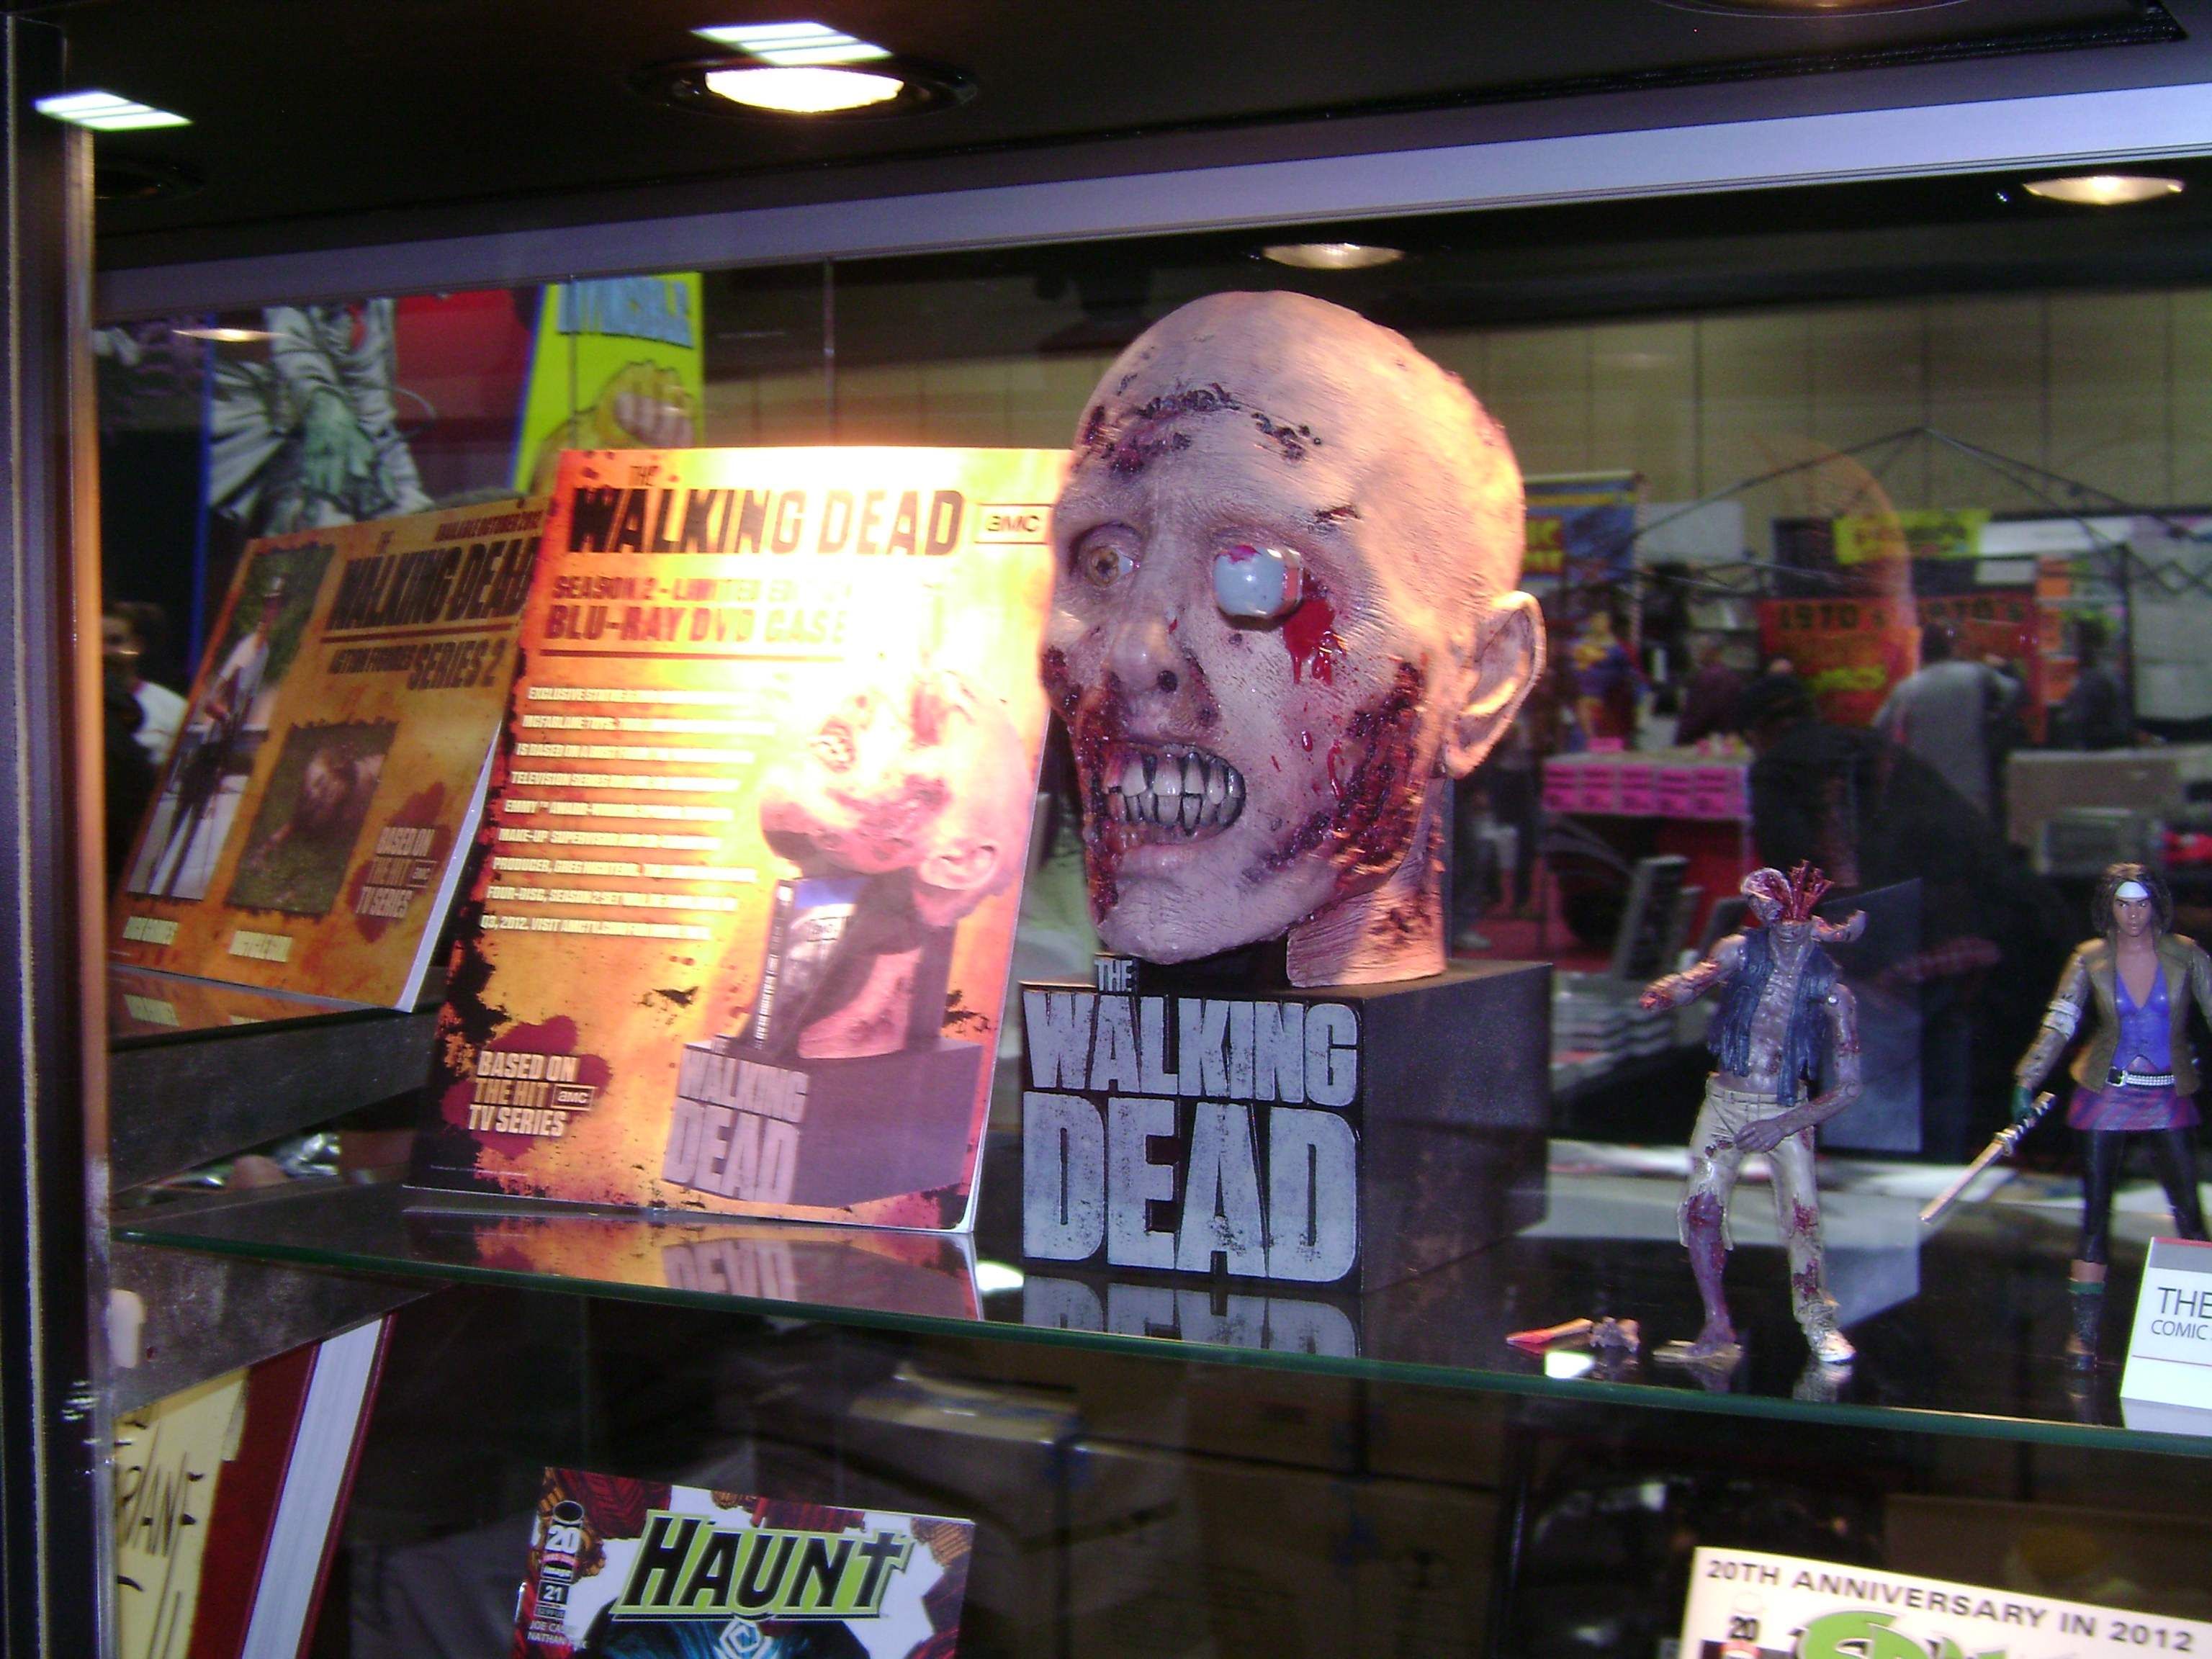 The Walking Dead Season 2 Blu-ray Case